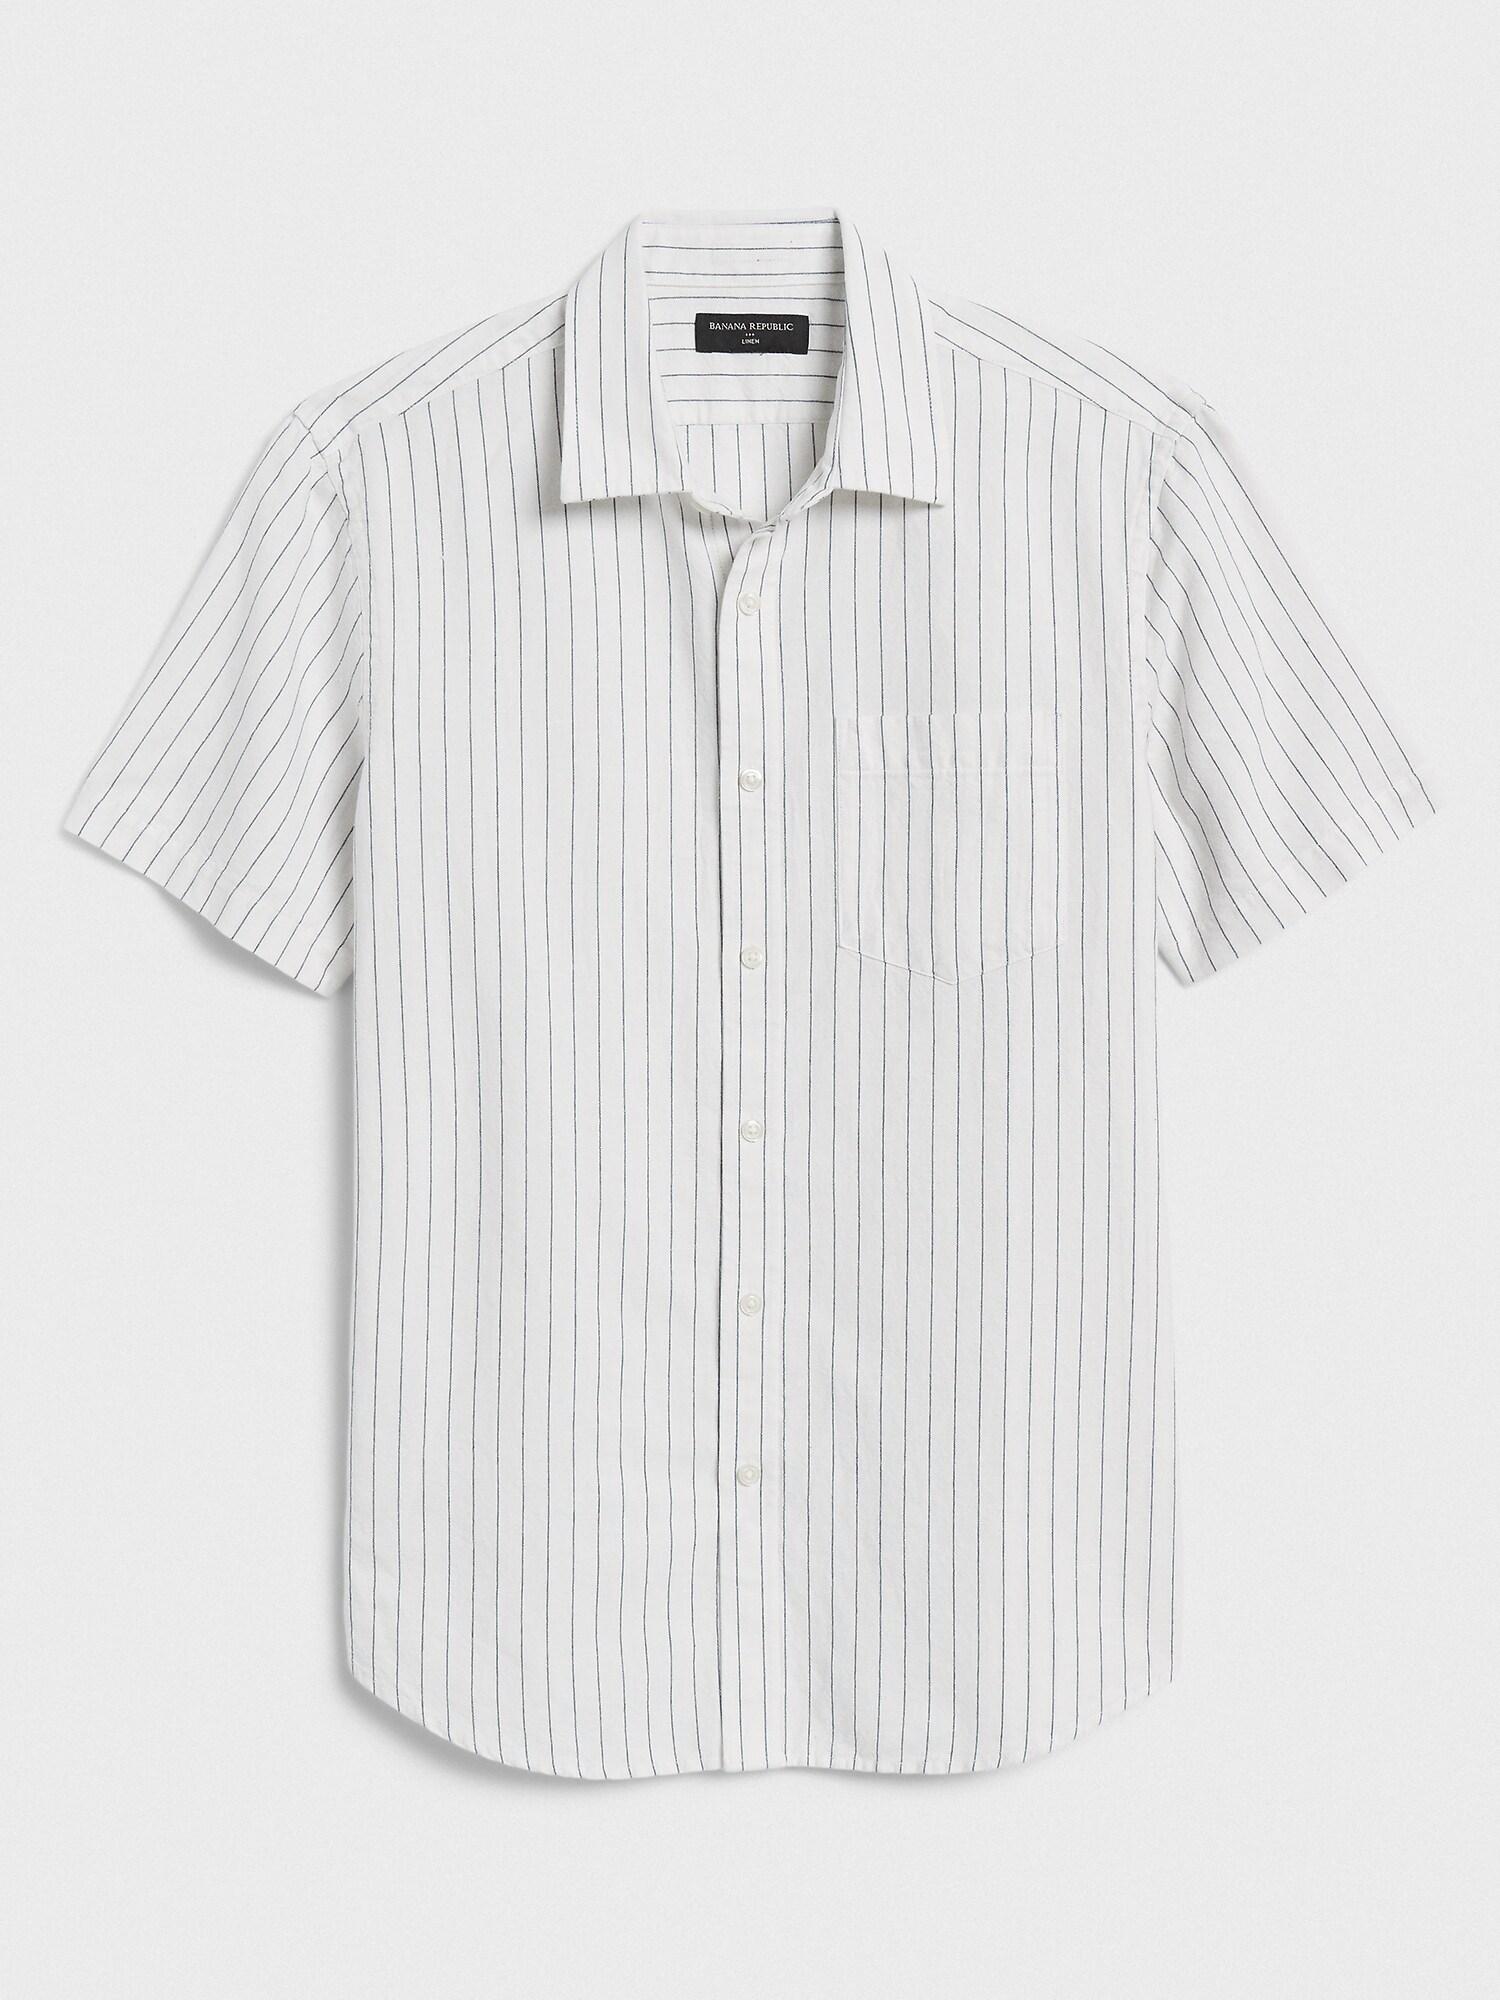 Banana Republic Factory Slim-fit Linen-blend Shirt in White for Men - Lyst